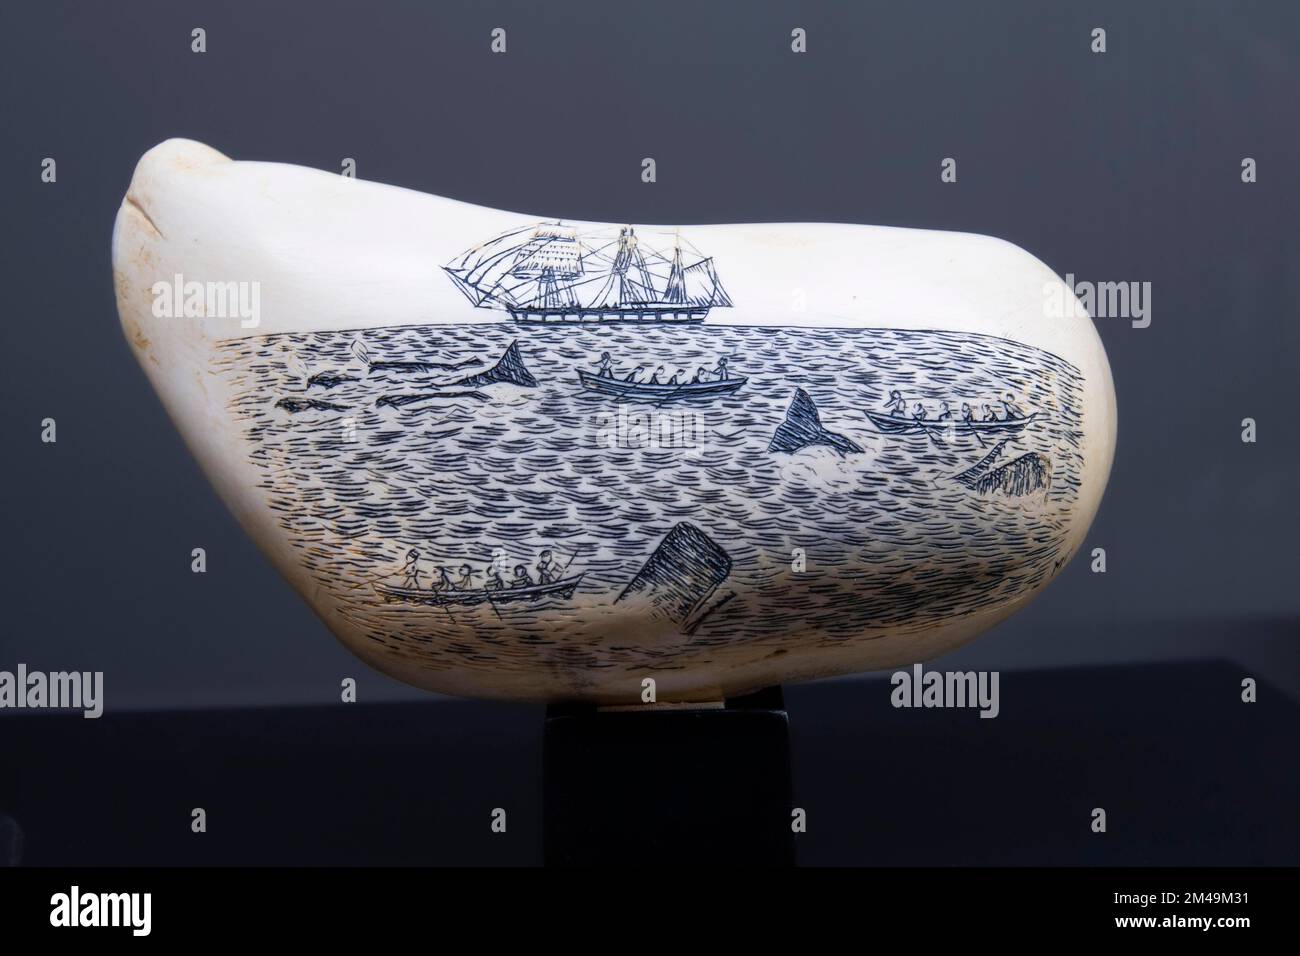 Dessins historiques sur une dent de cachalot (Physeter macrocephalus) (Syn.: Physeter catodon), Musée des baleines à Canical, île de Madère, Portugal Banque D'Images